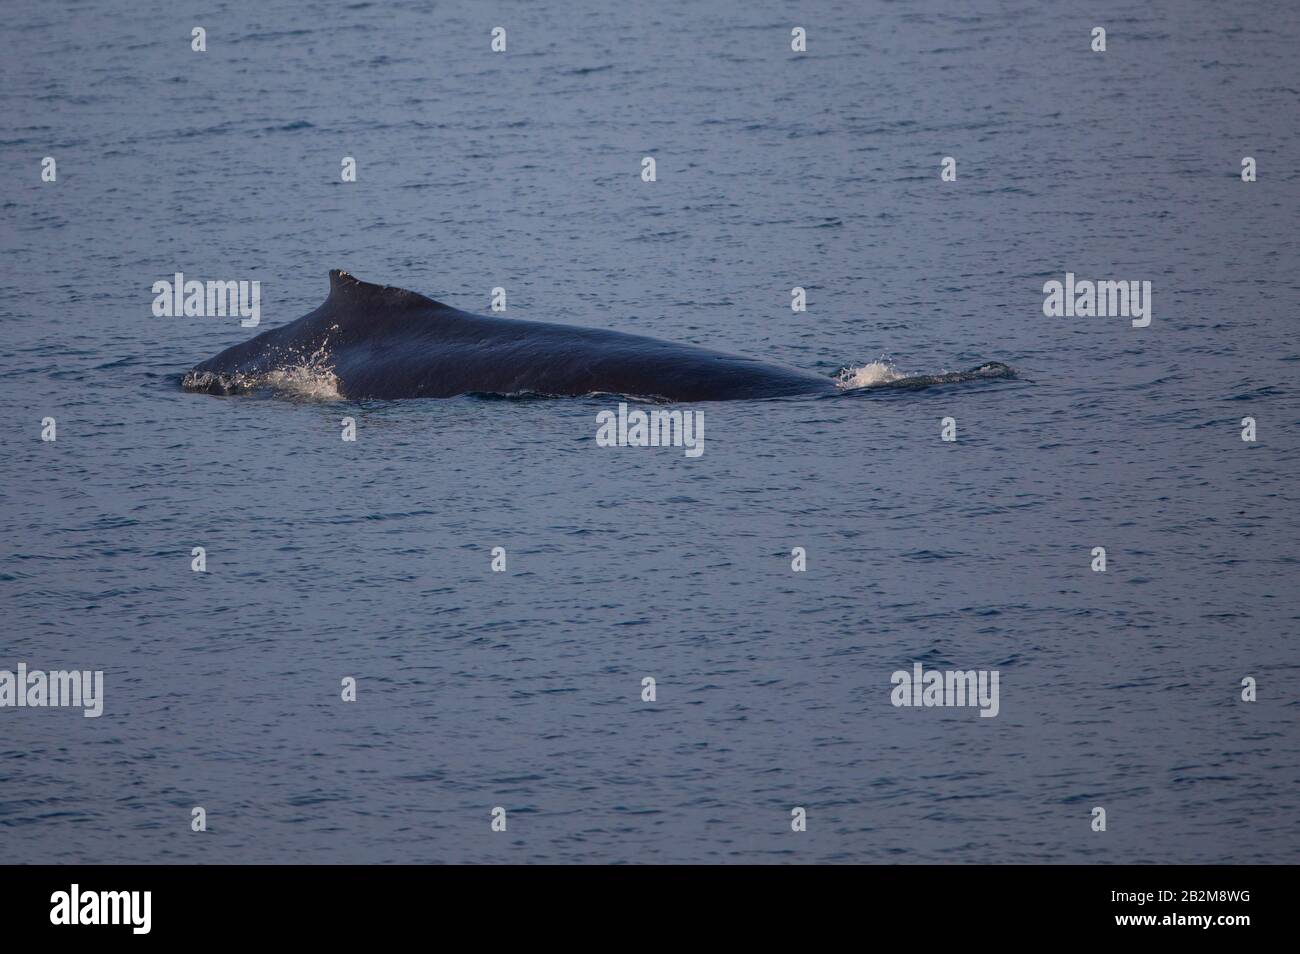 Baleine à bosse du nord, Spitsbergen, Norvège. Mammifères marins de l'arctique, voyageant dans le monde entier. Banque D'Images